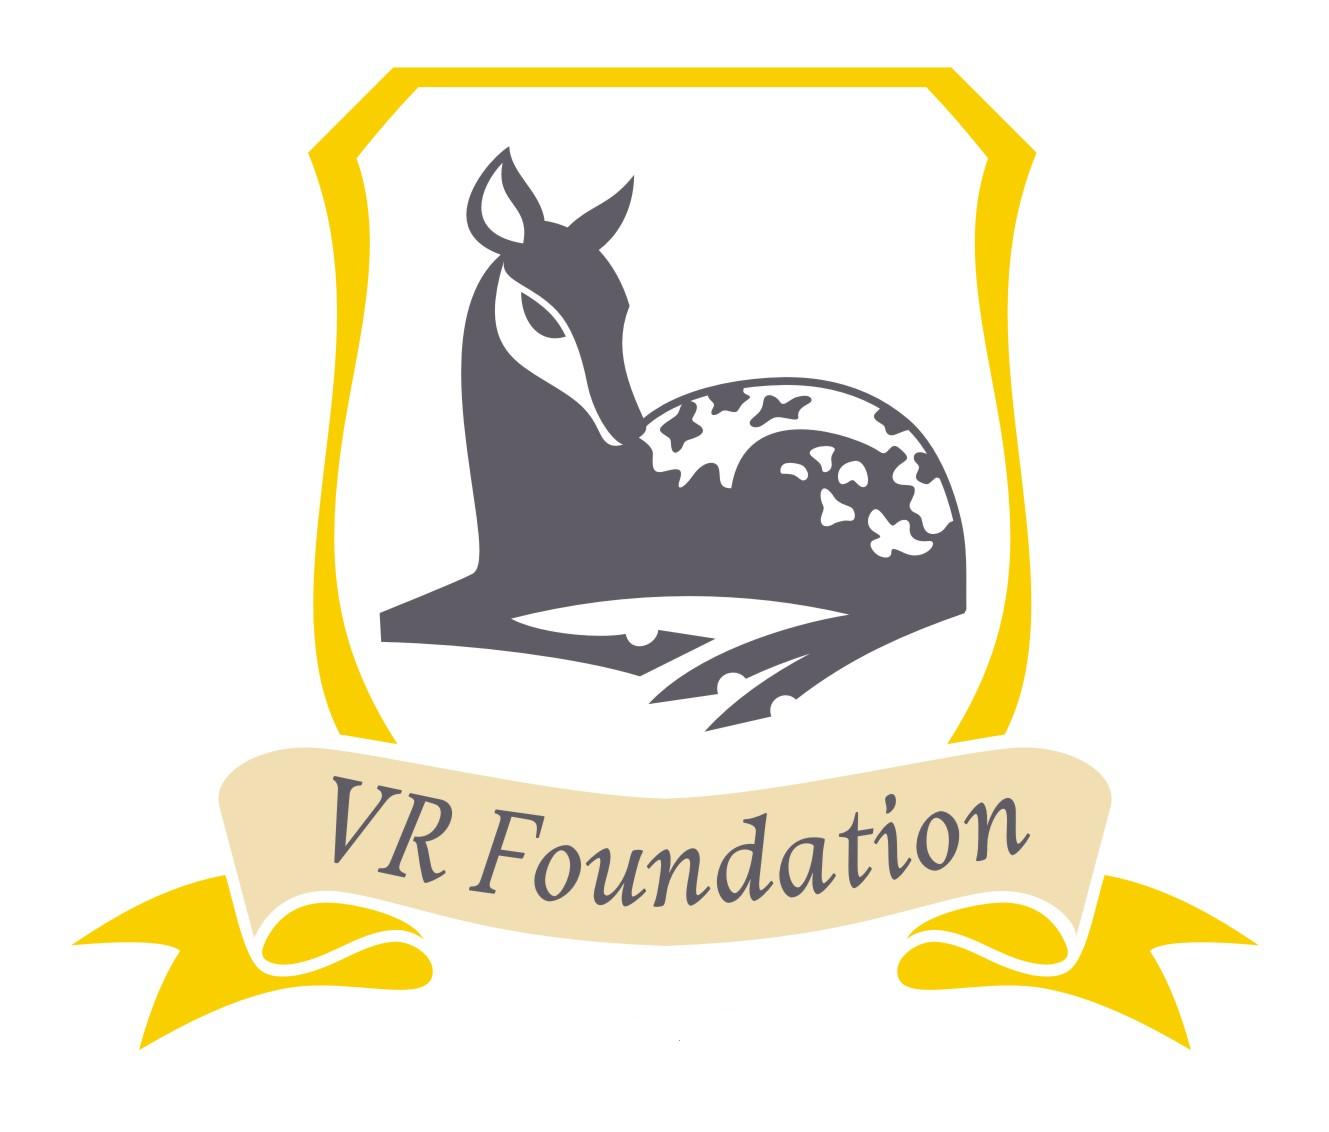 VR Foundation logo